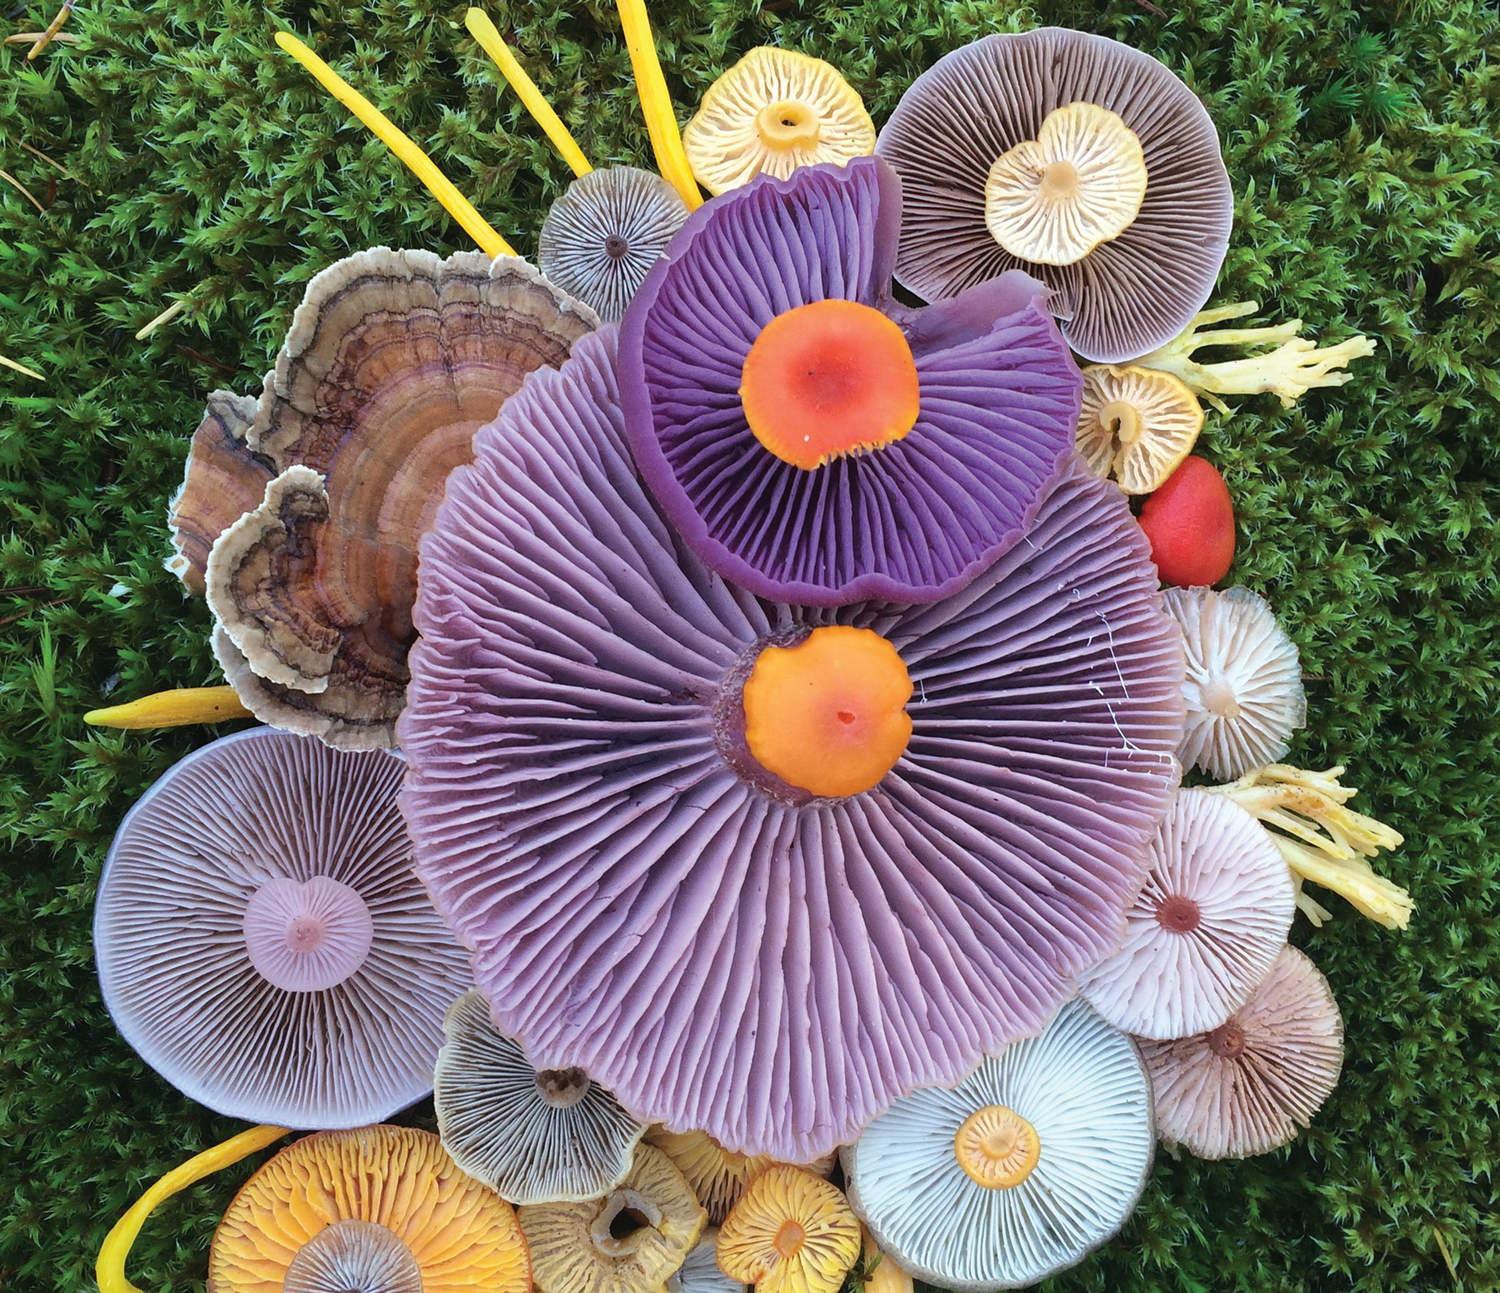 Джилл Блисс: цветные грибы из фотосерии «Природная мозаика»